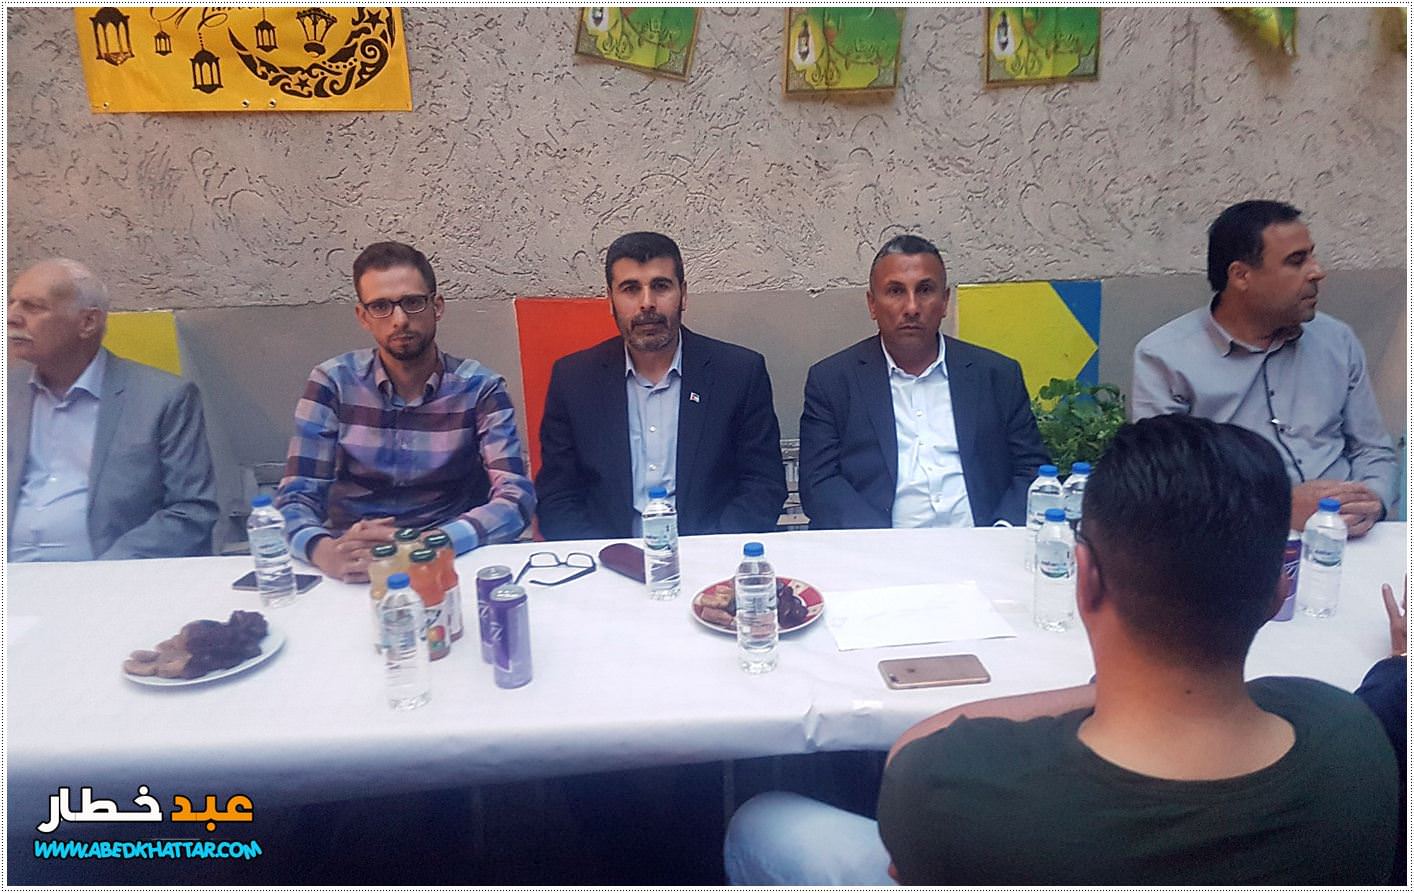 ألمانيا ينظم مأدبة إفطار لأبناء الجالية الفلسطينية و العربية في برلين